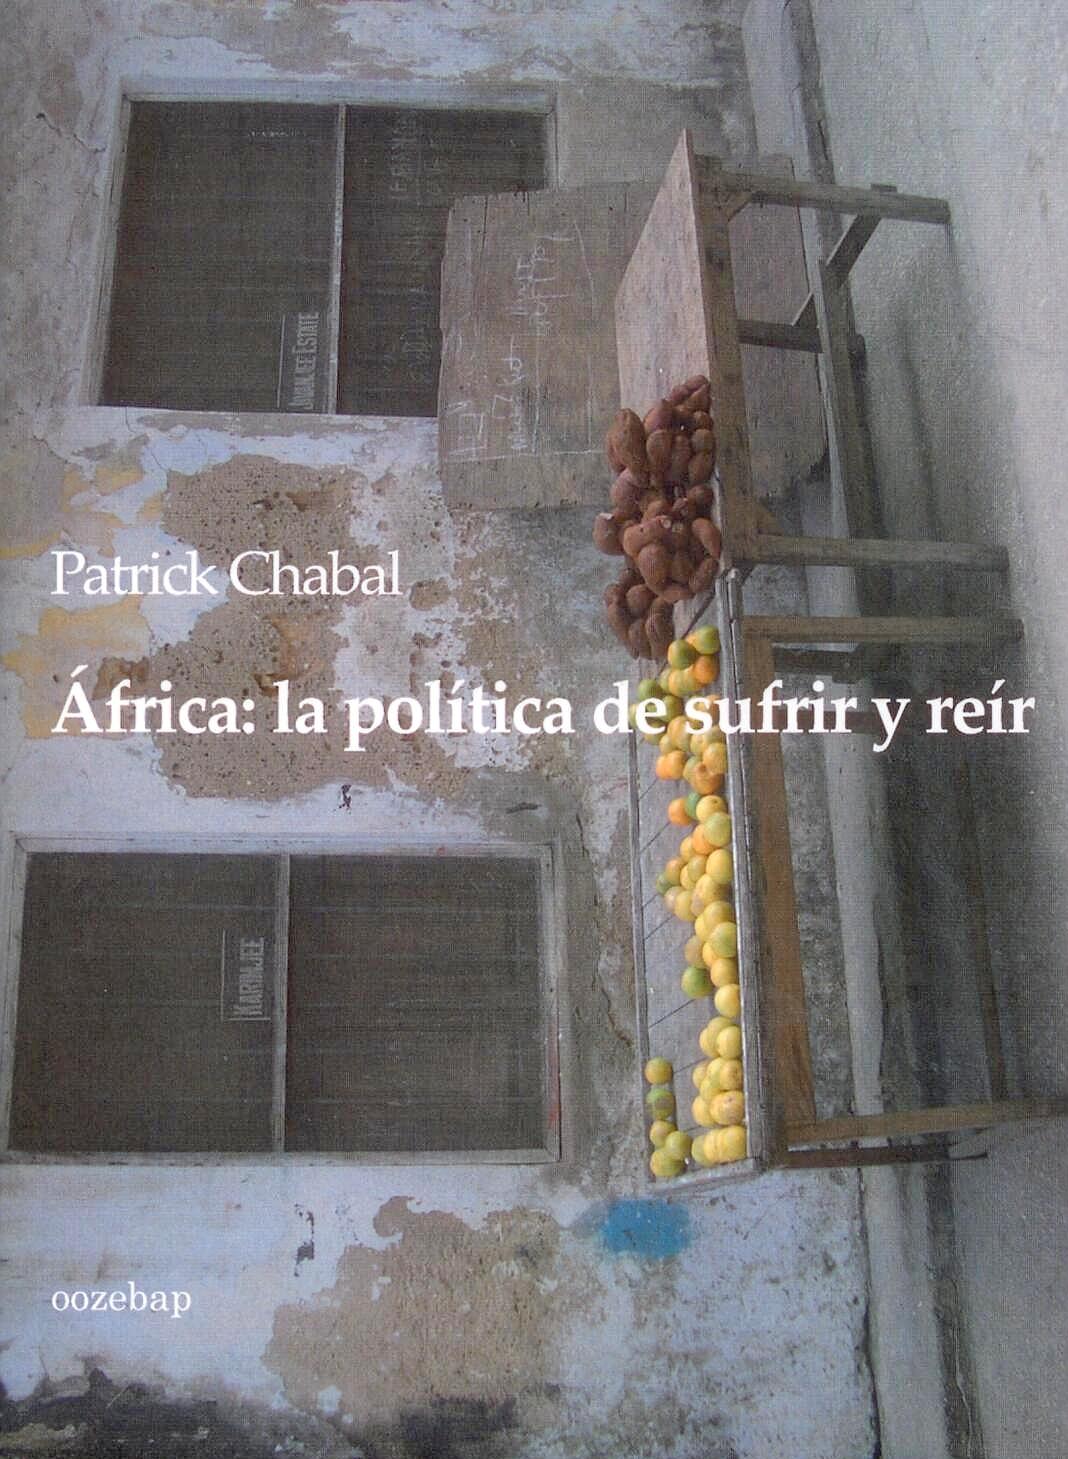 Africa "La politica de sufrir y reir"